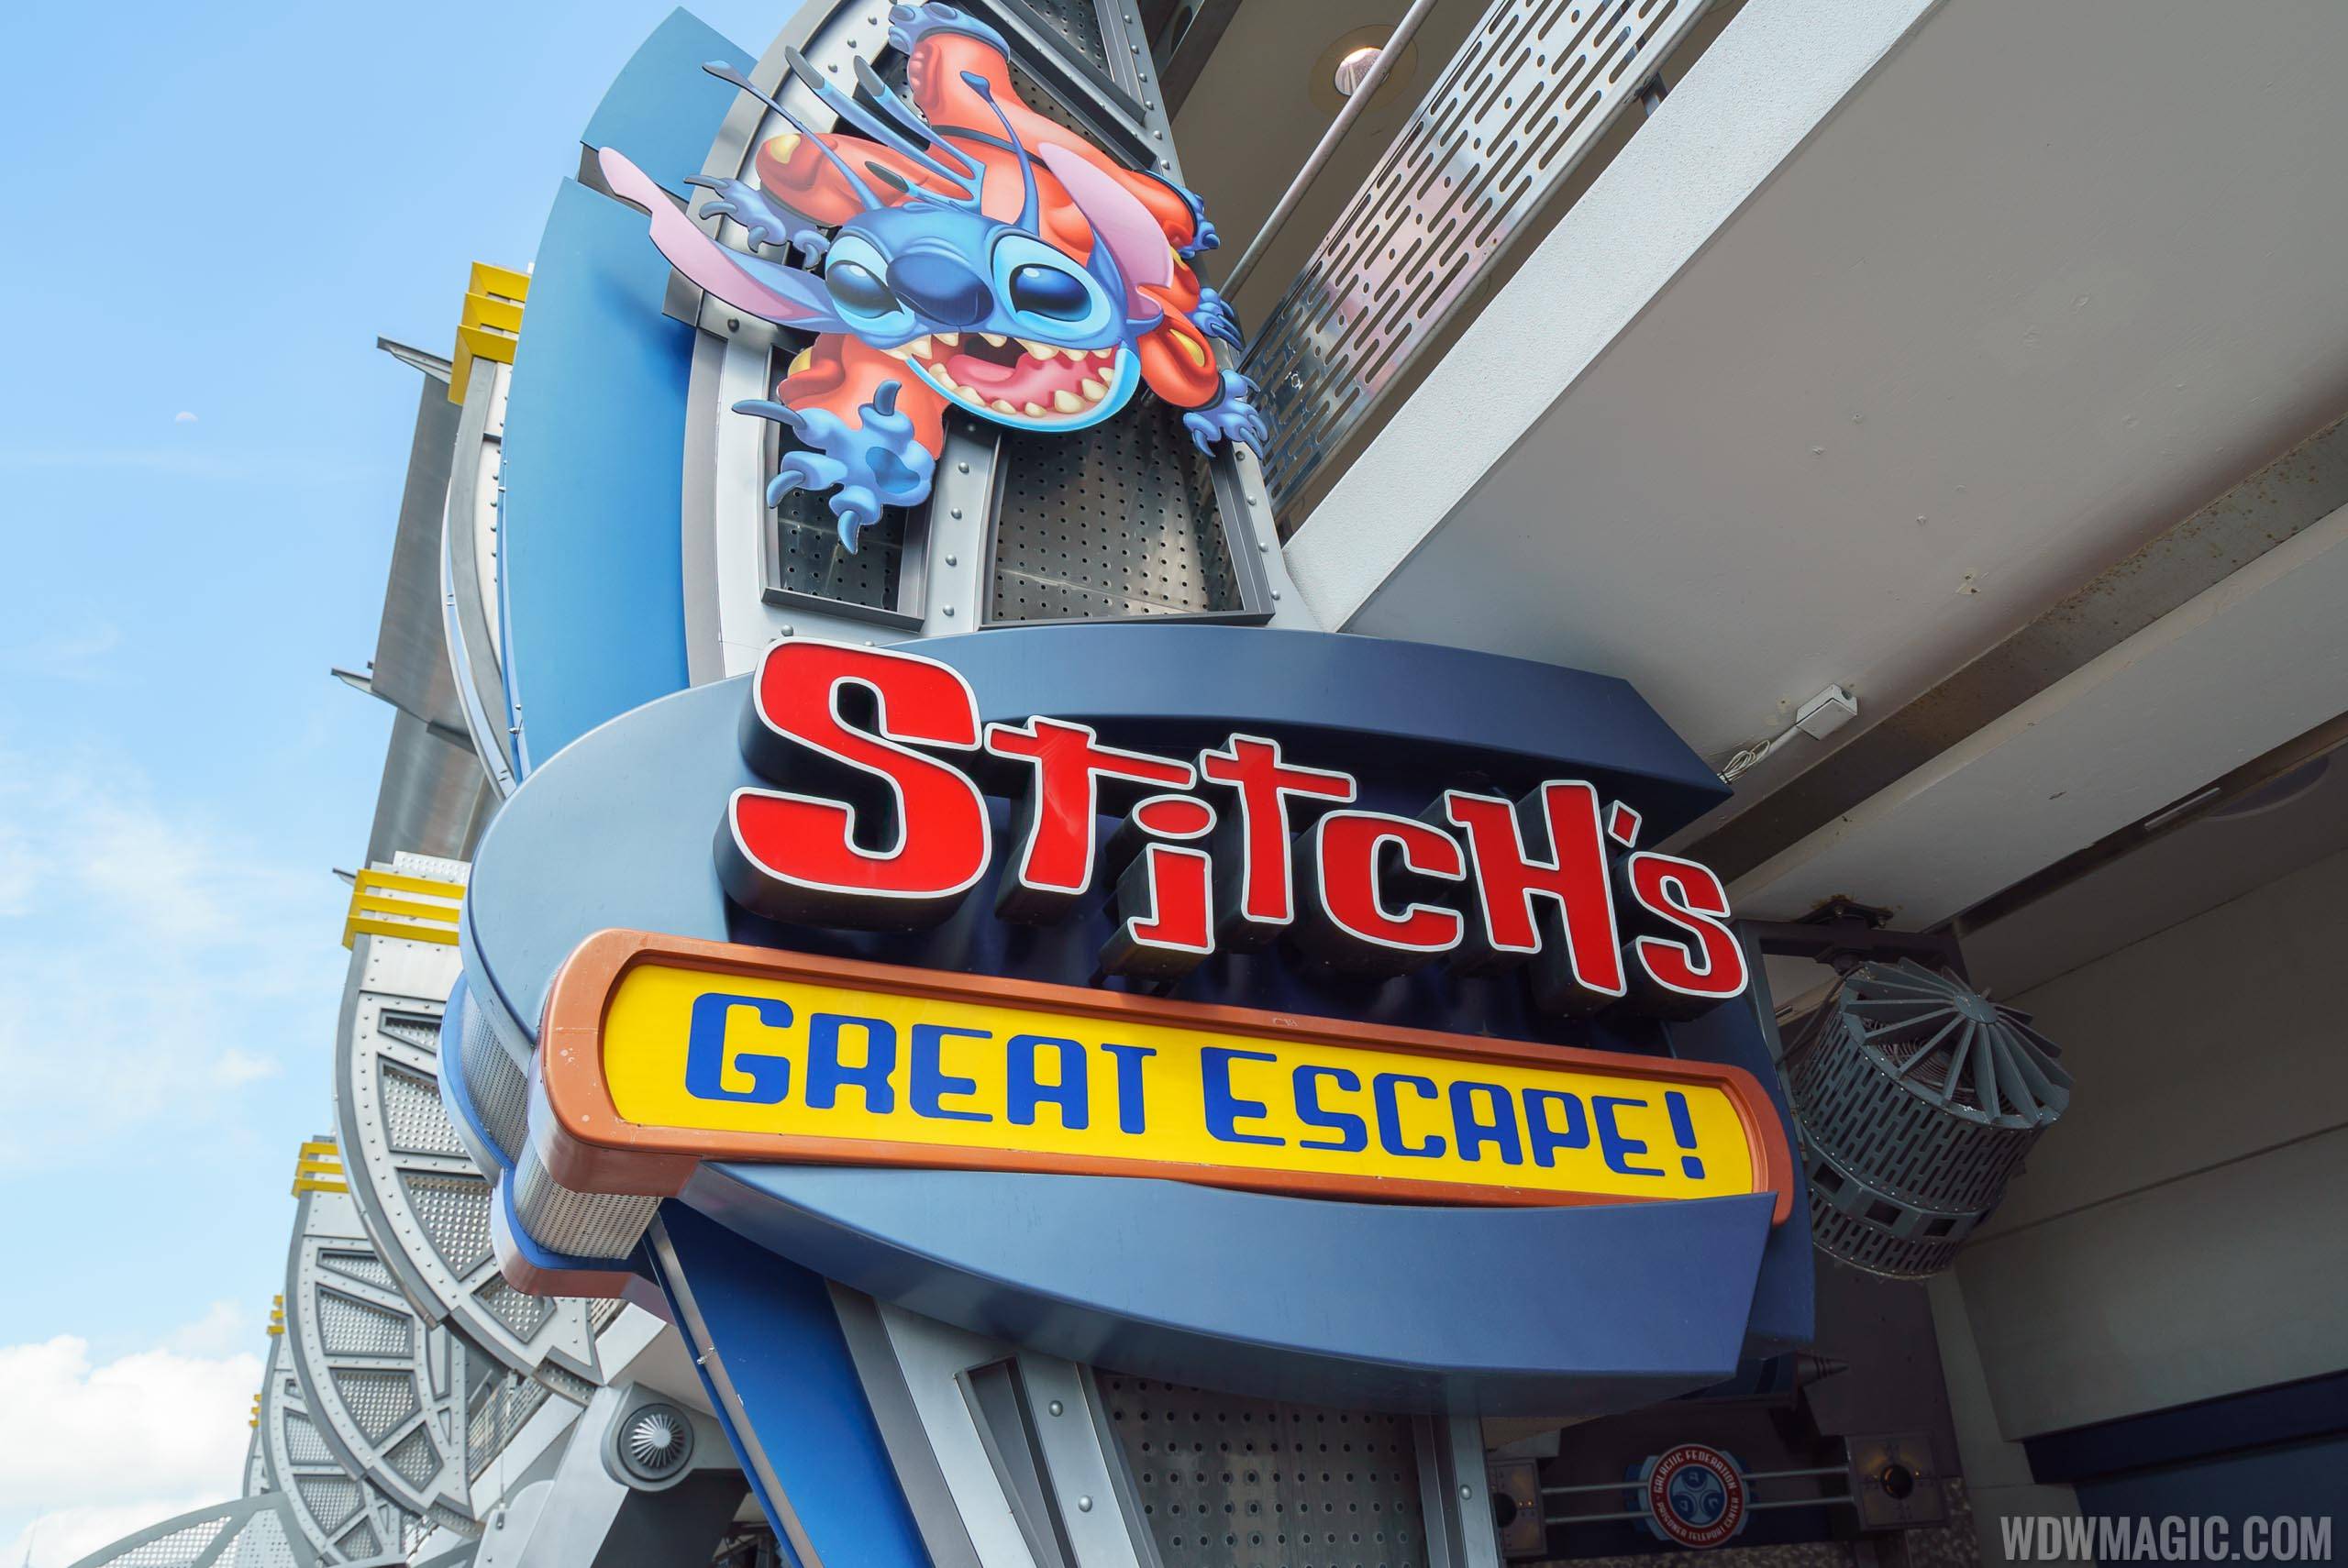 Stitch's Great Escape! entrance signage